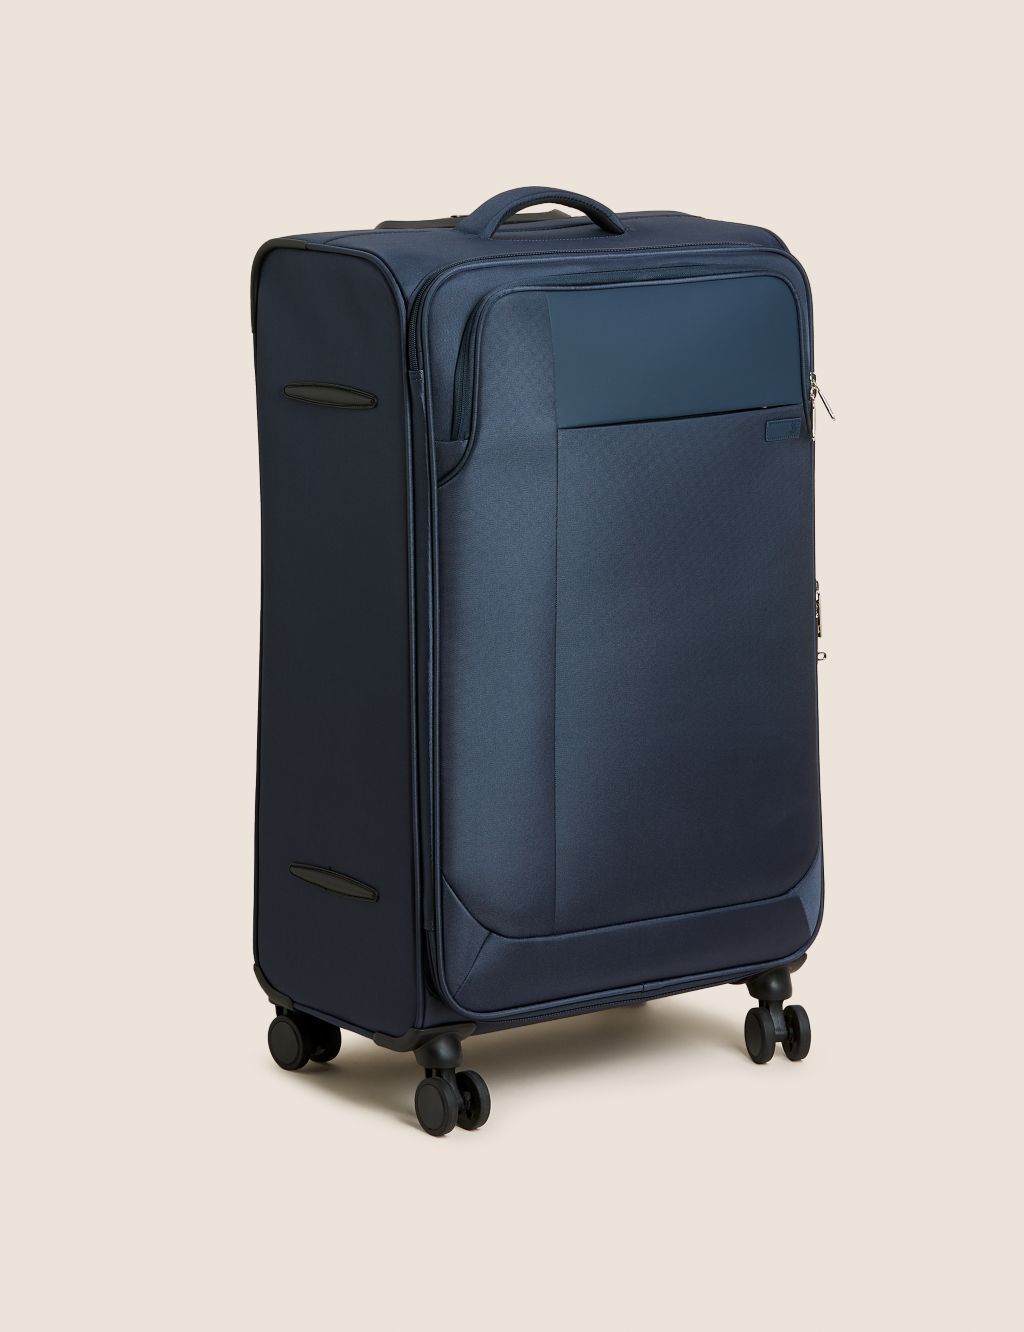 Lyon 4 Wheel Soft Large Suitcase image 1